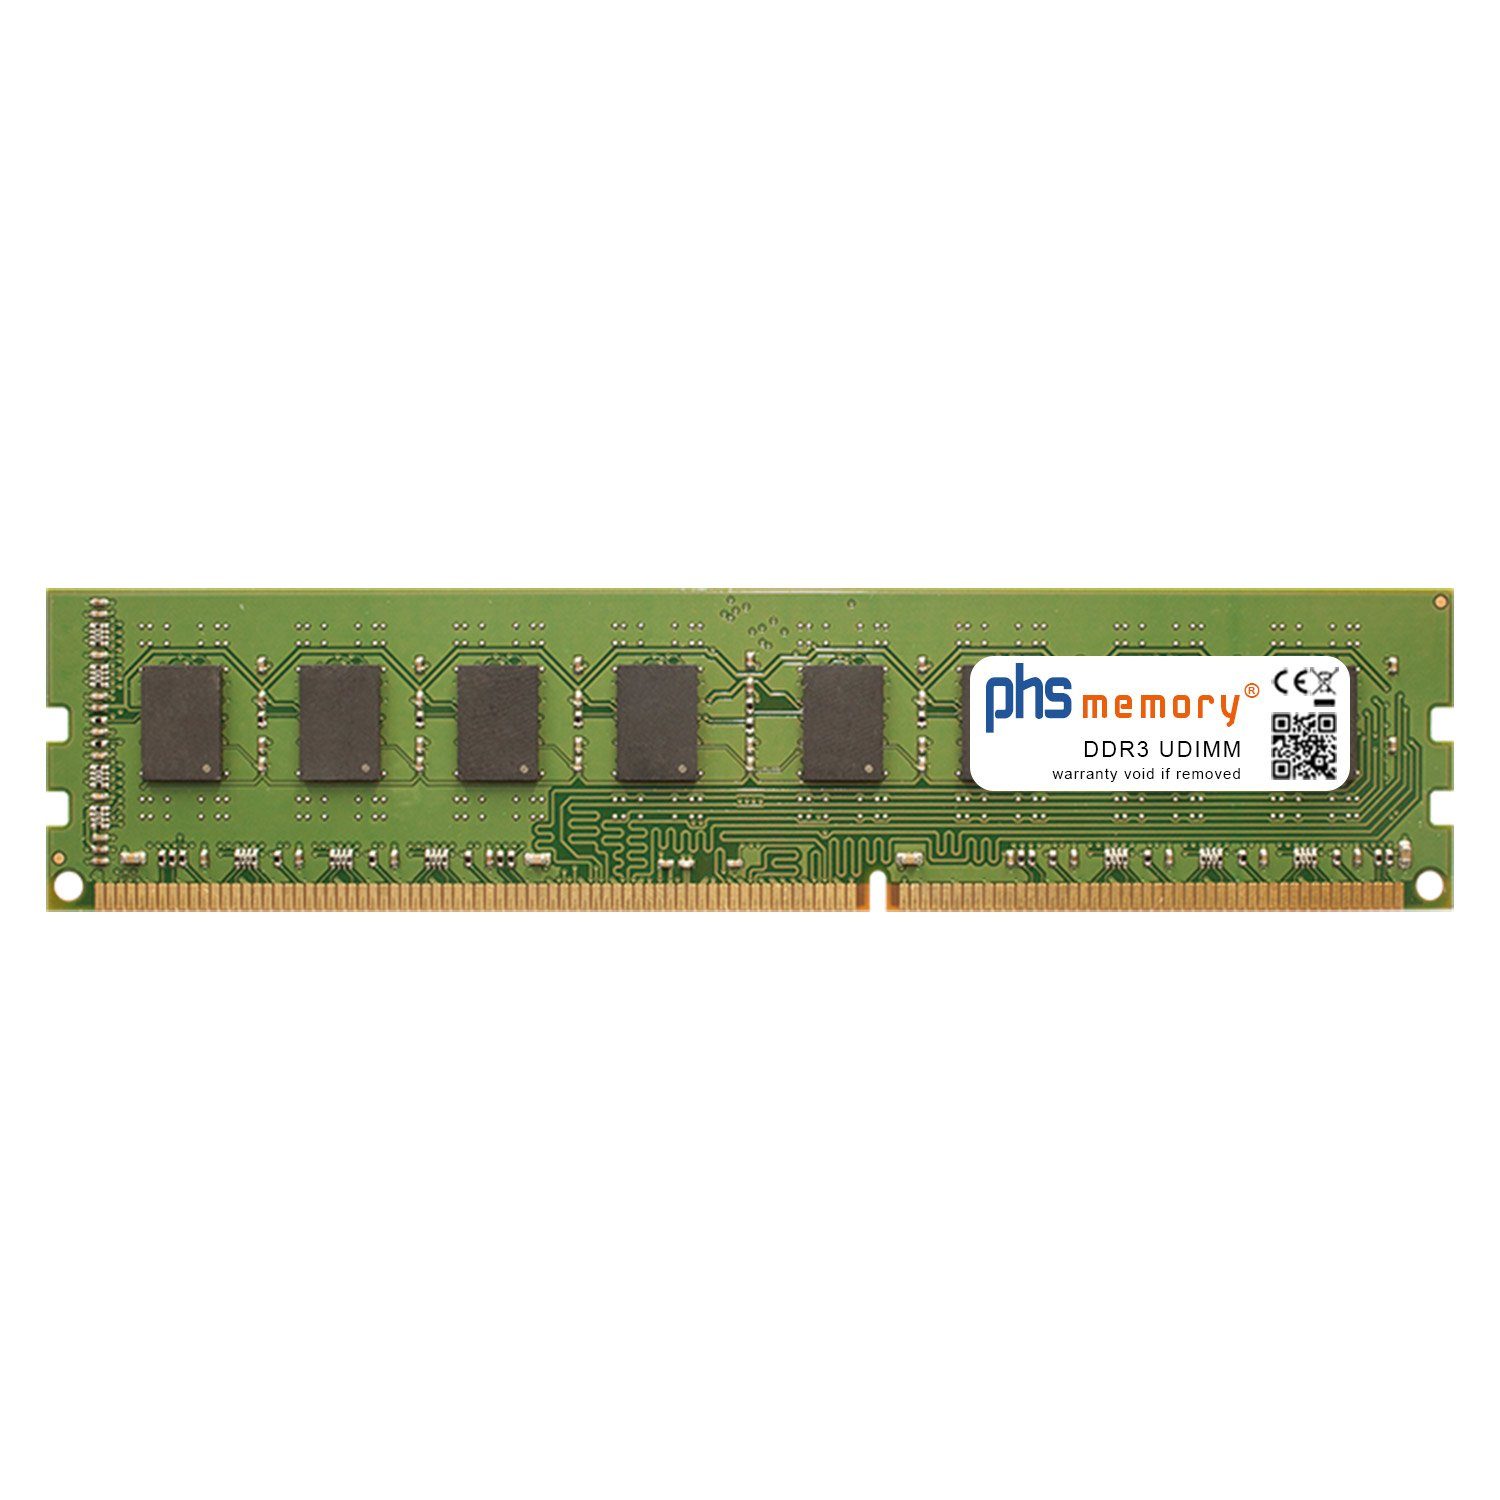 PHS-memory RAM für HP Pavilion p6-2010bem Arbeitsspeicher